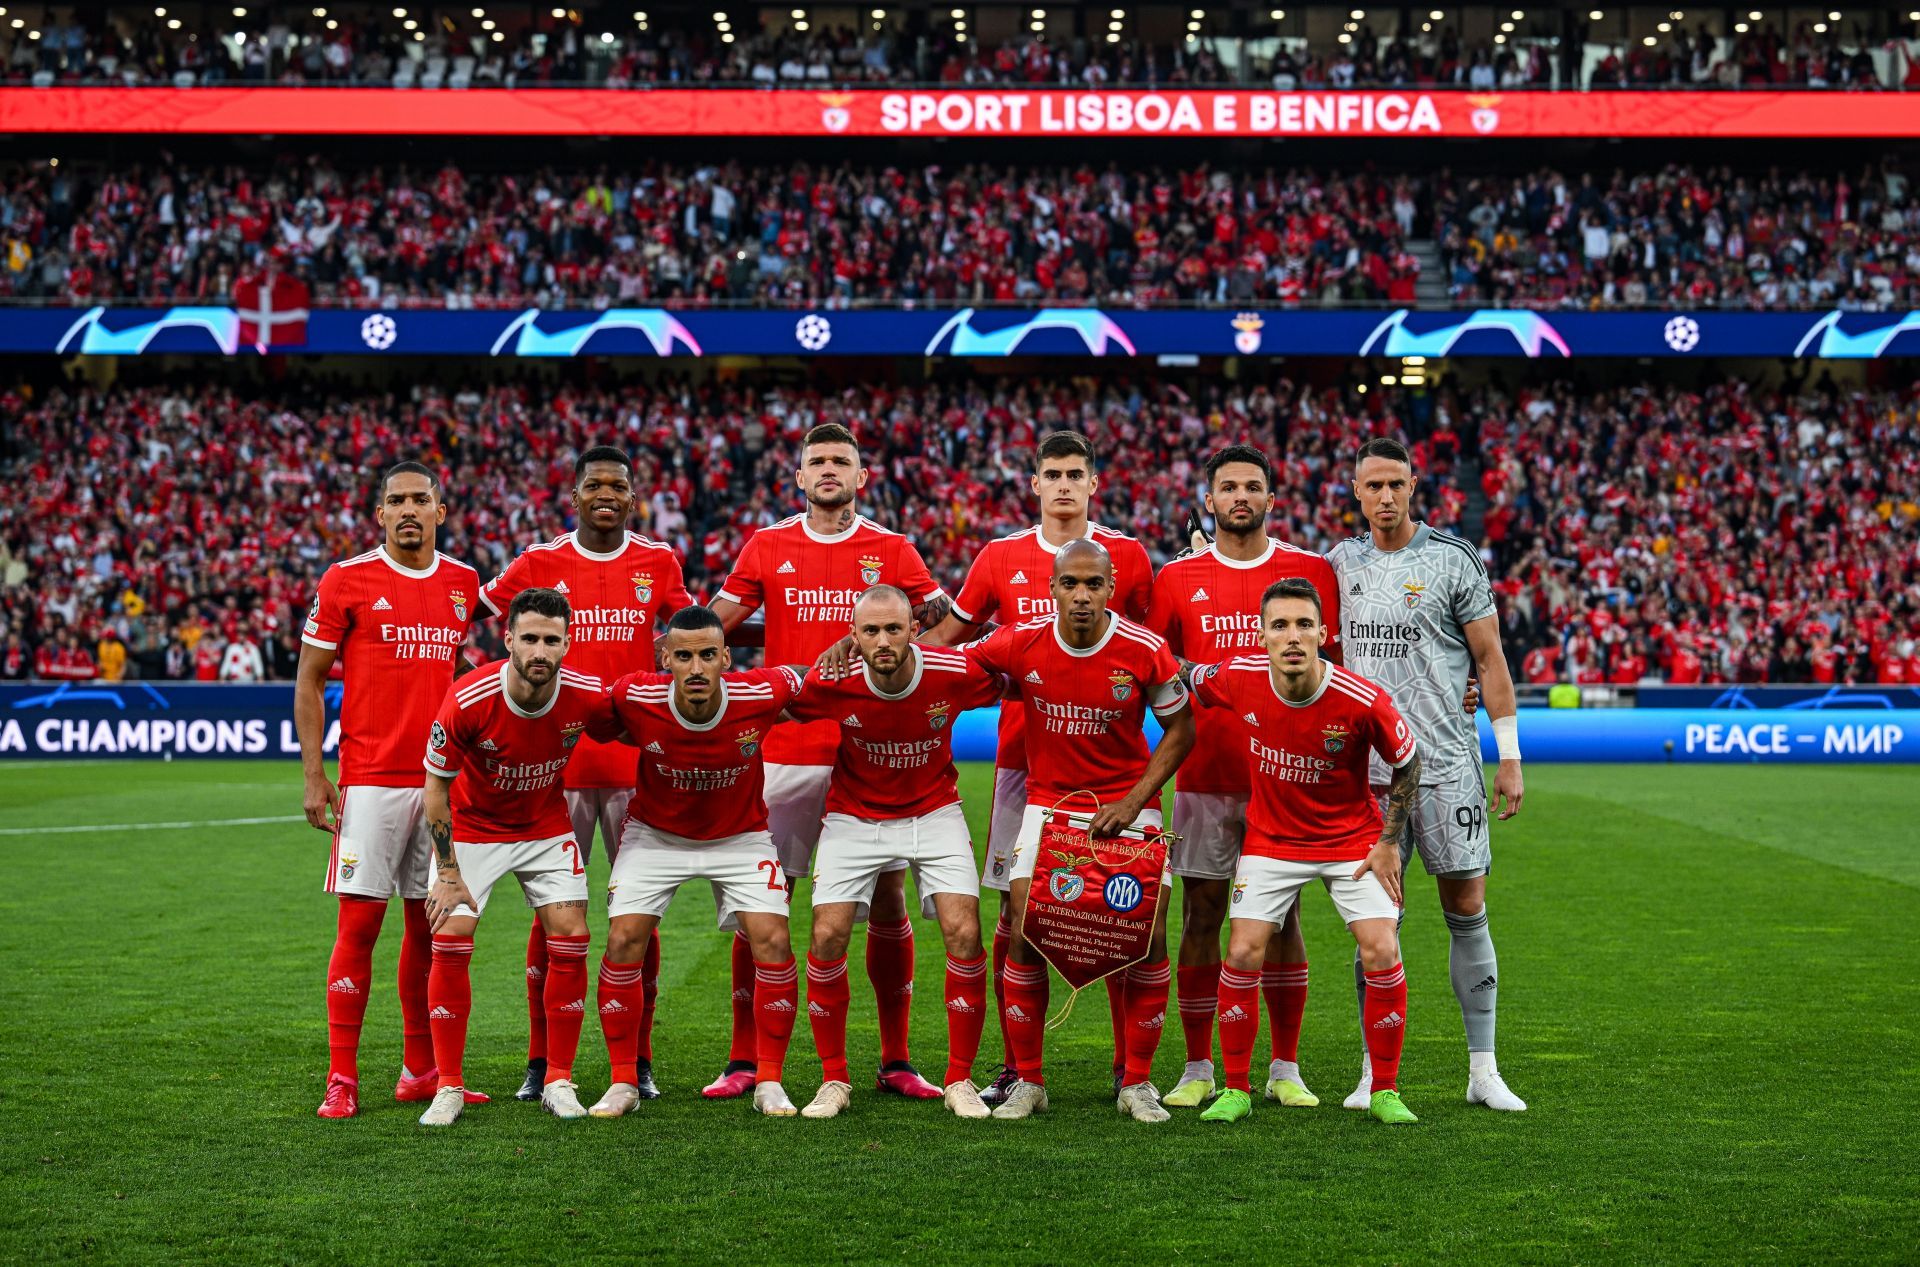 SL Benfica could win their 38th Primeira Liga